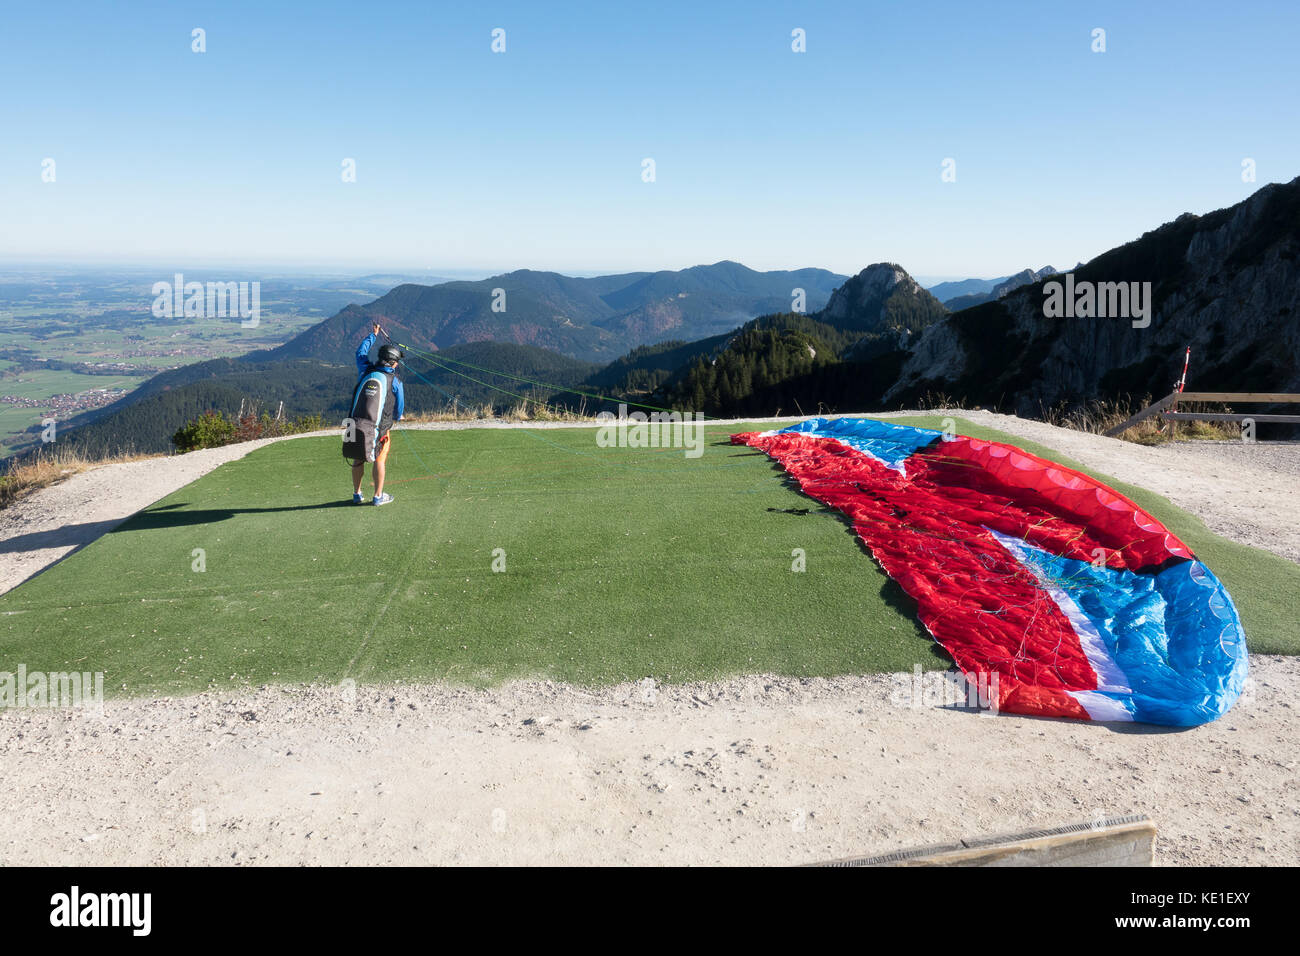 Der Mensch bereitet seinen Hang Glider vor dem Abheben vom Berg Stockfoto